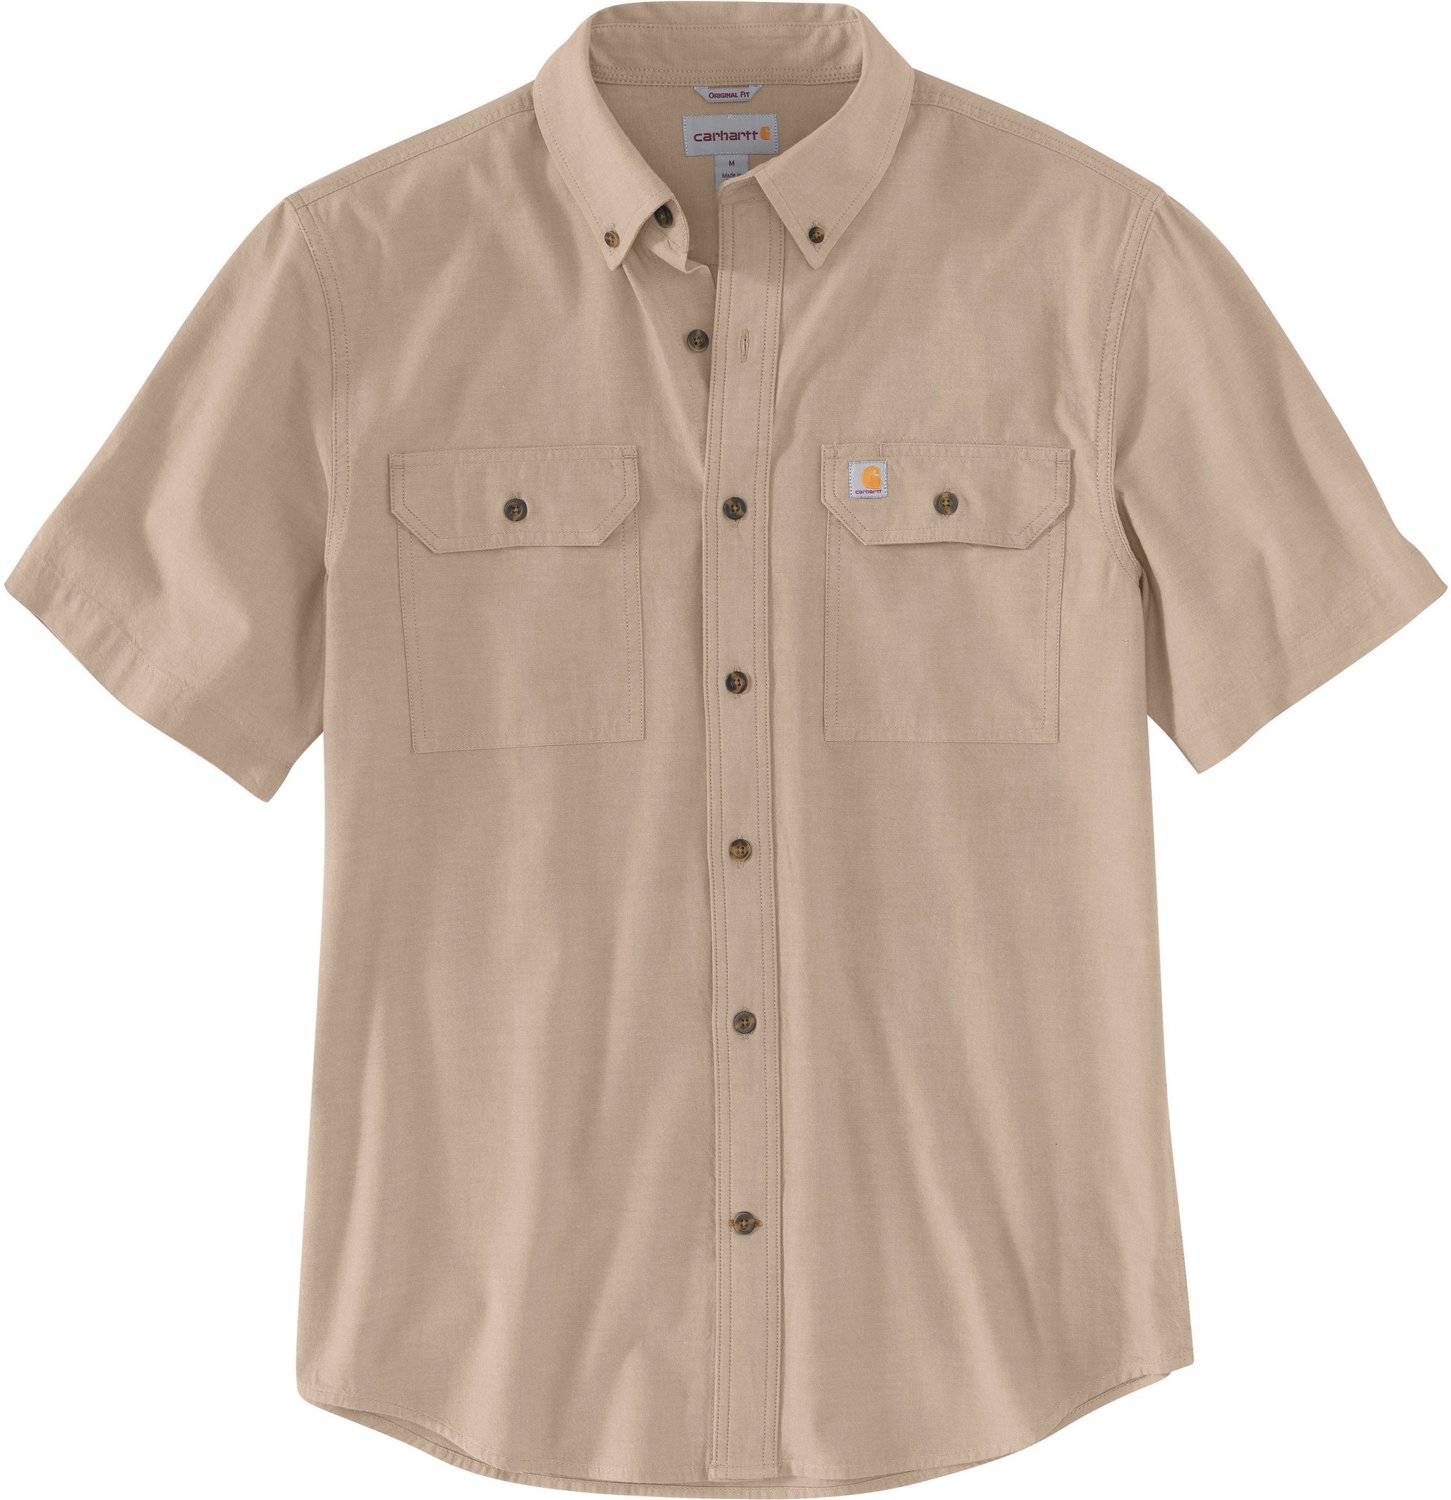 Carhartt Mens TW369 Original Fit Short Sleeve Shirt